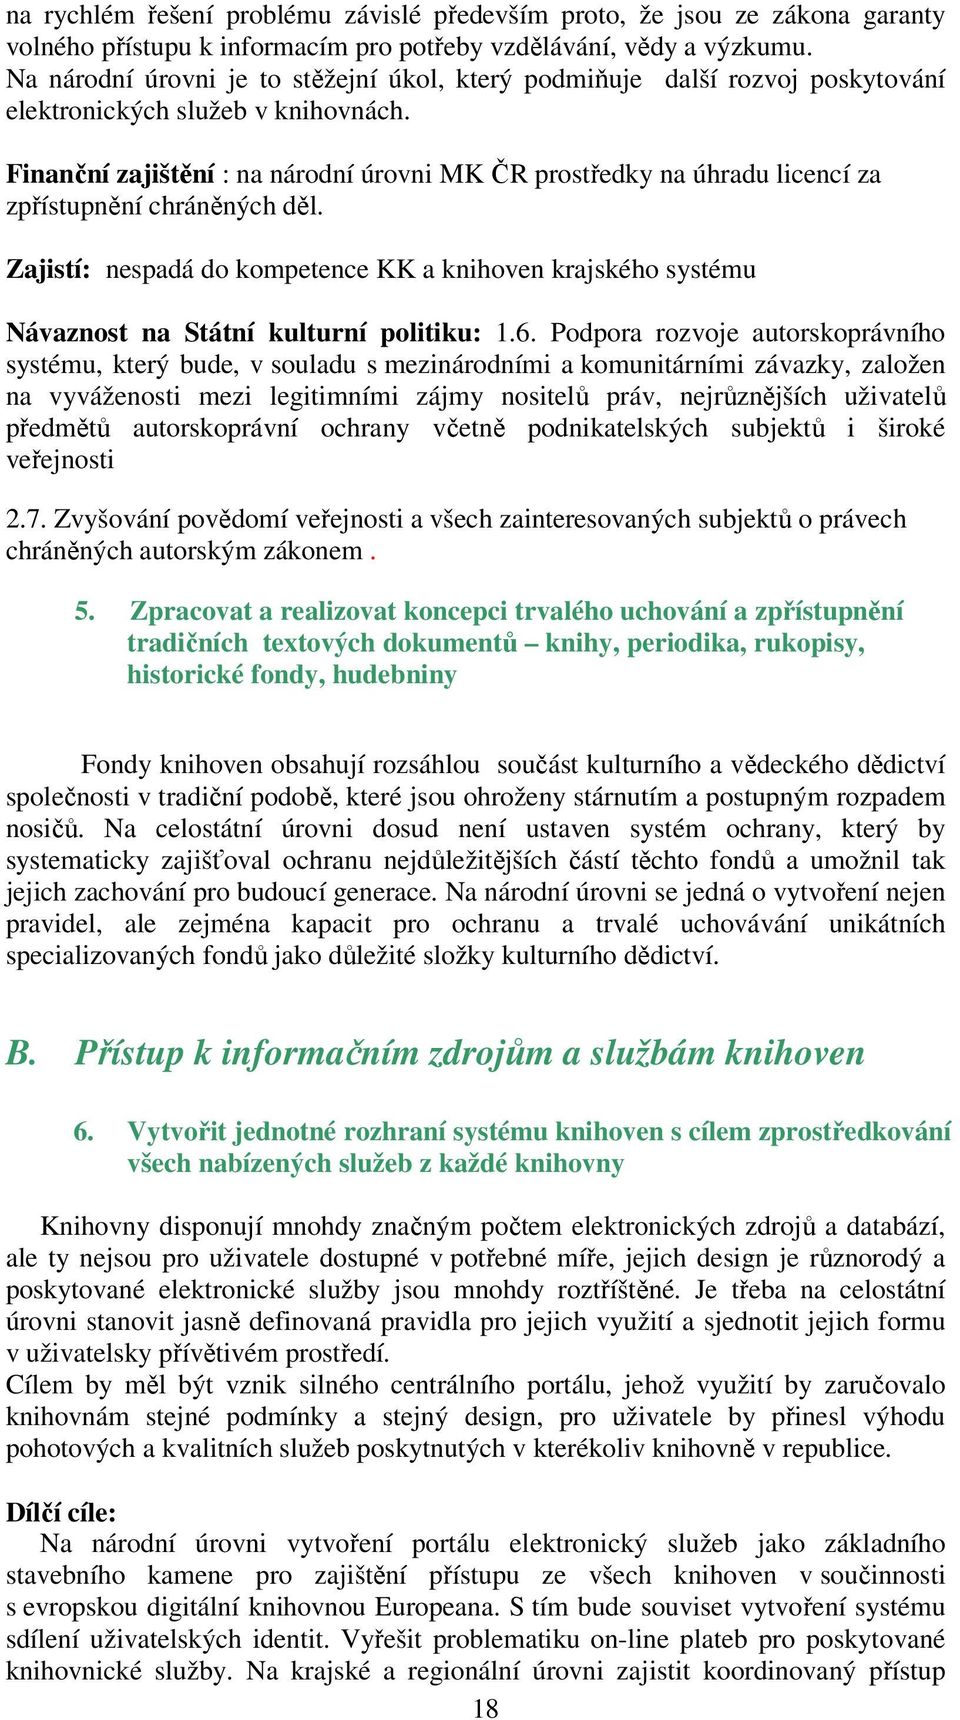 Finanční zajištění : na národní úrovni MK ČR prostředky na úhradu licencí za zpřístupnění chráněných děl.